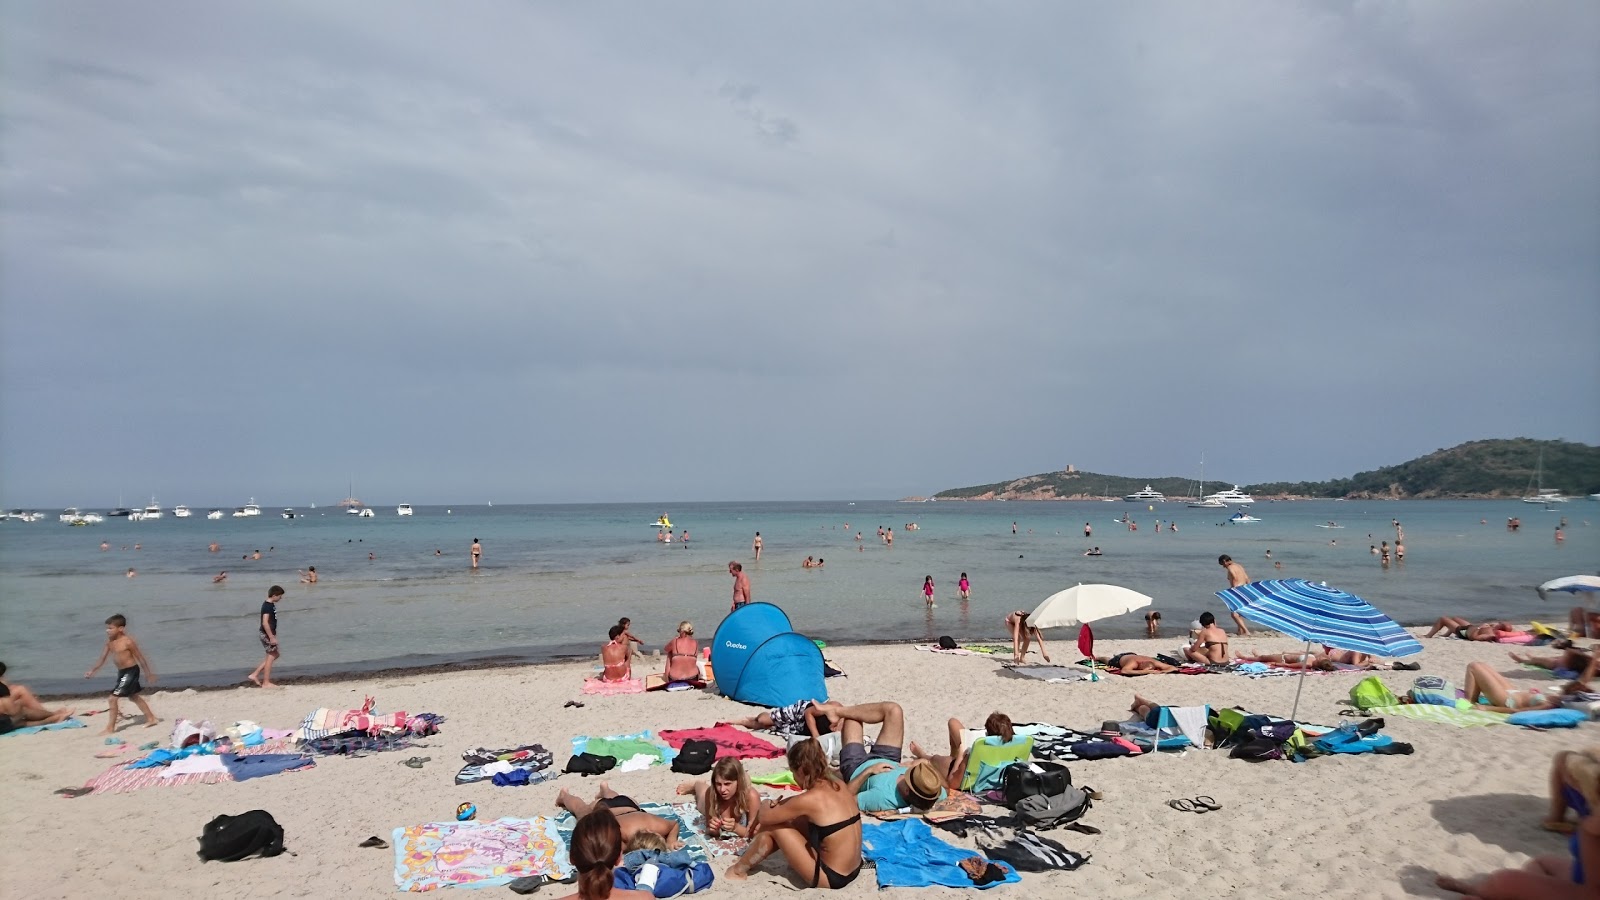 Pinarellu Plajı'in fotoğrafı - rahatlamayı sevenler arasında popüler bir yer